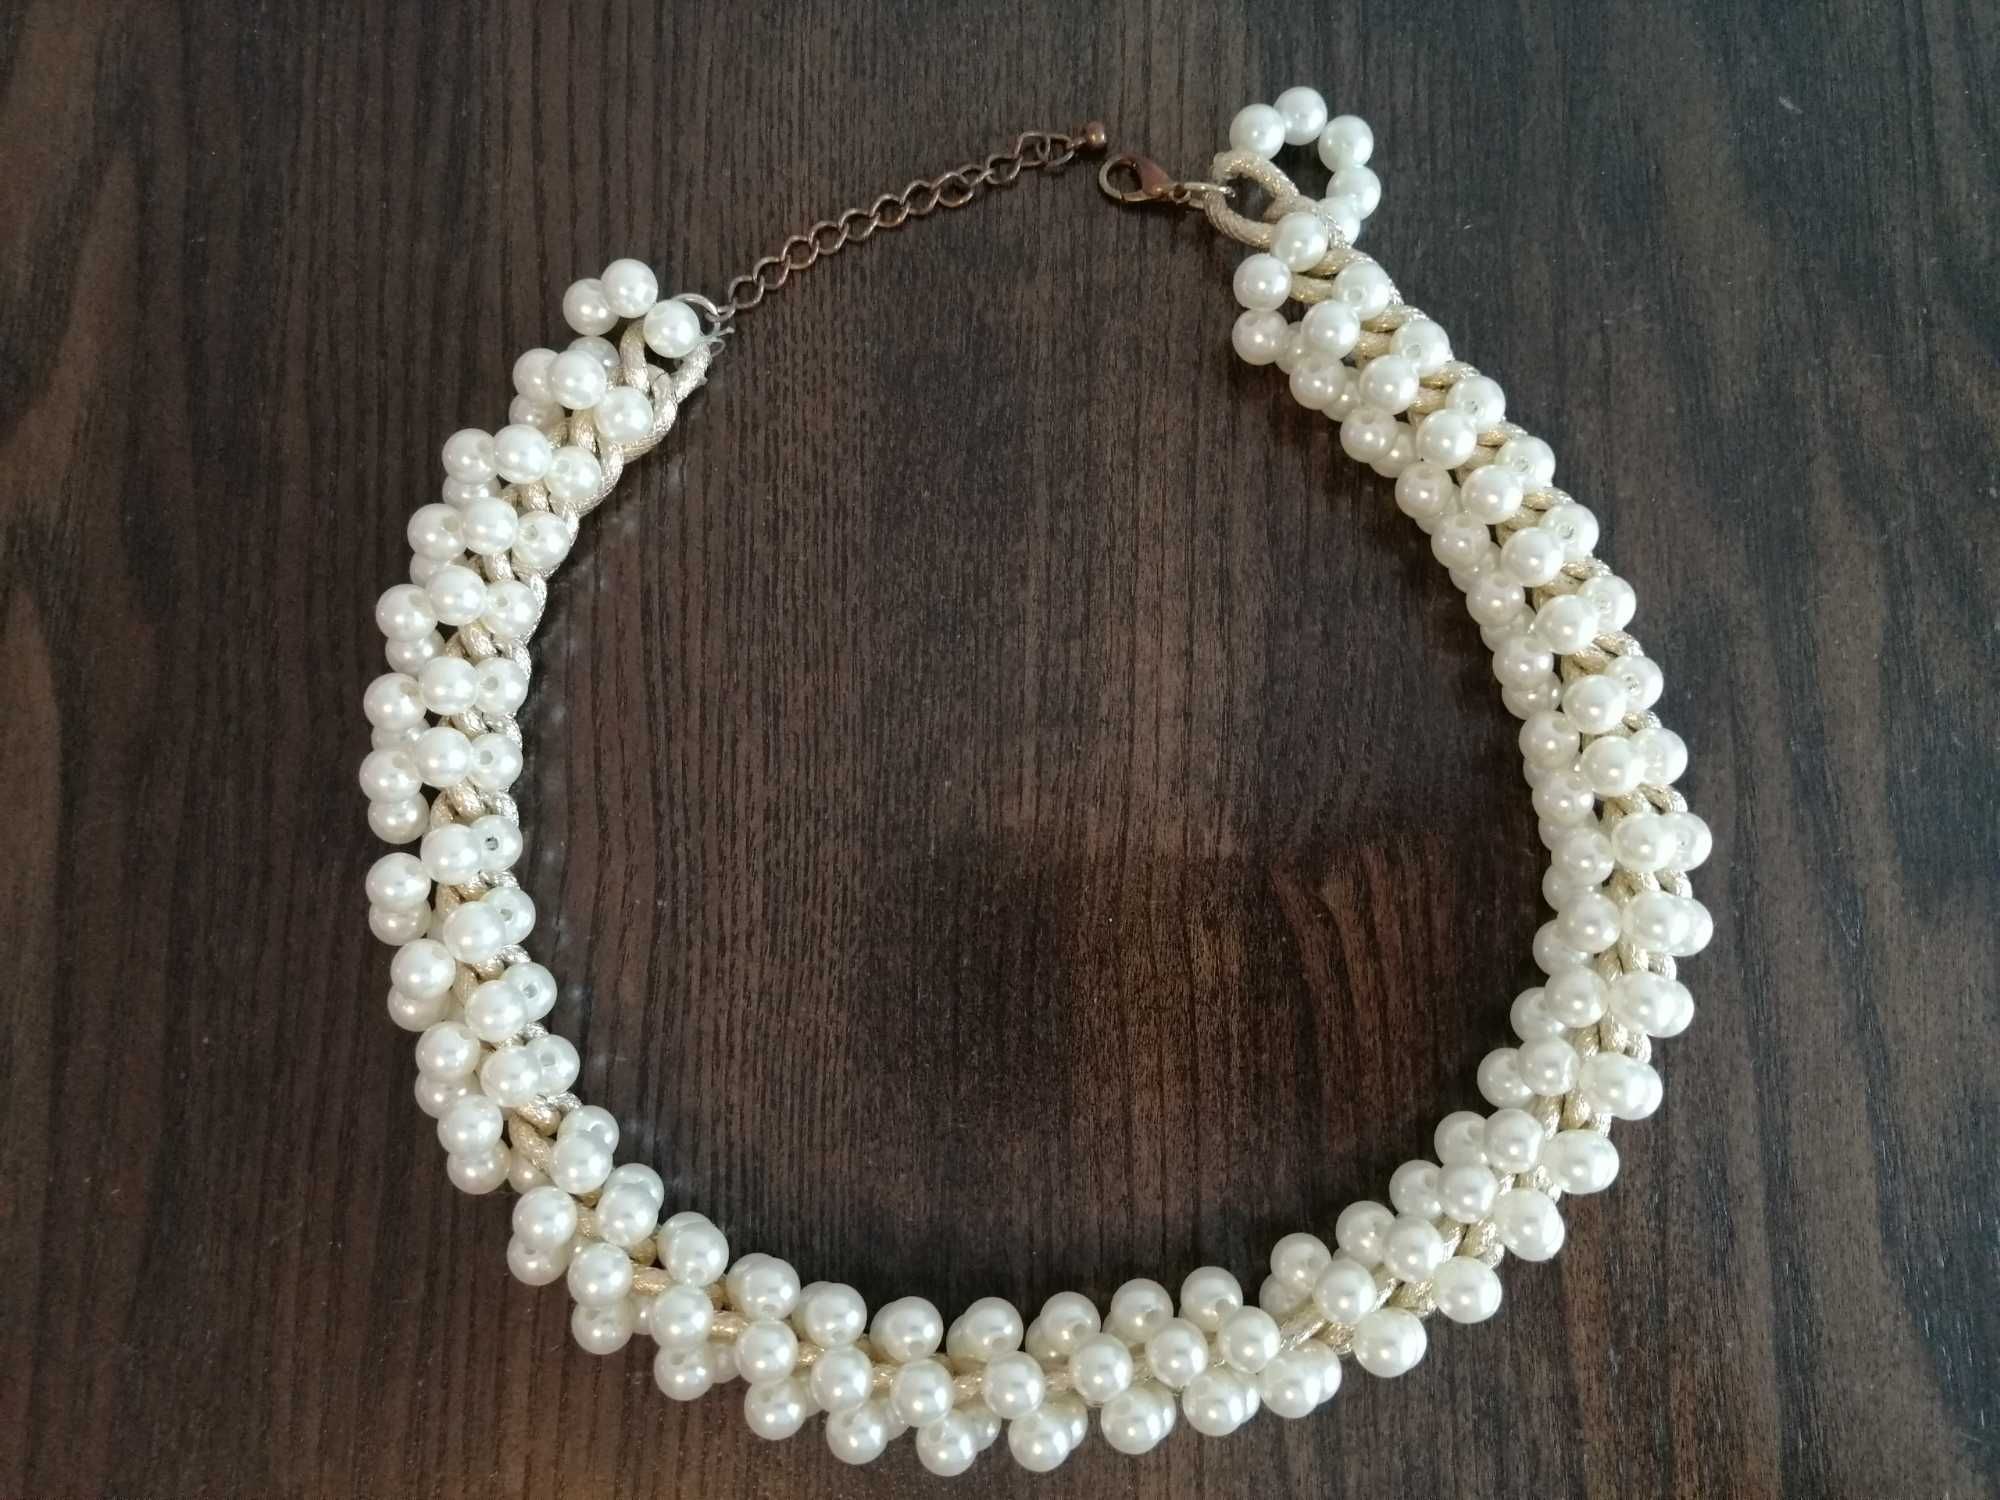 Gruby naszyjnik z perłami